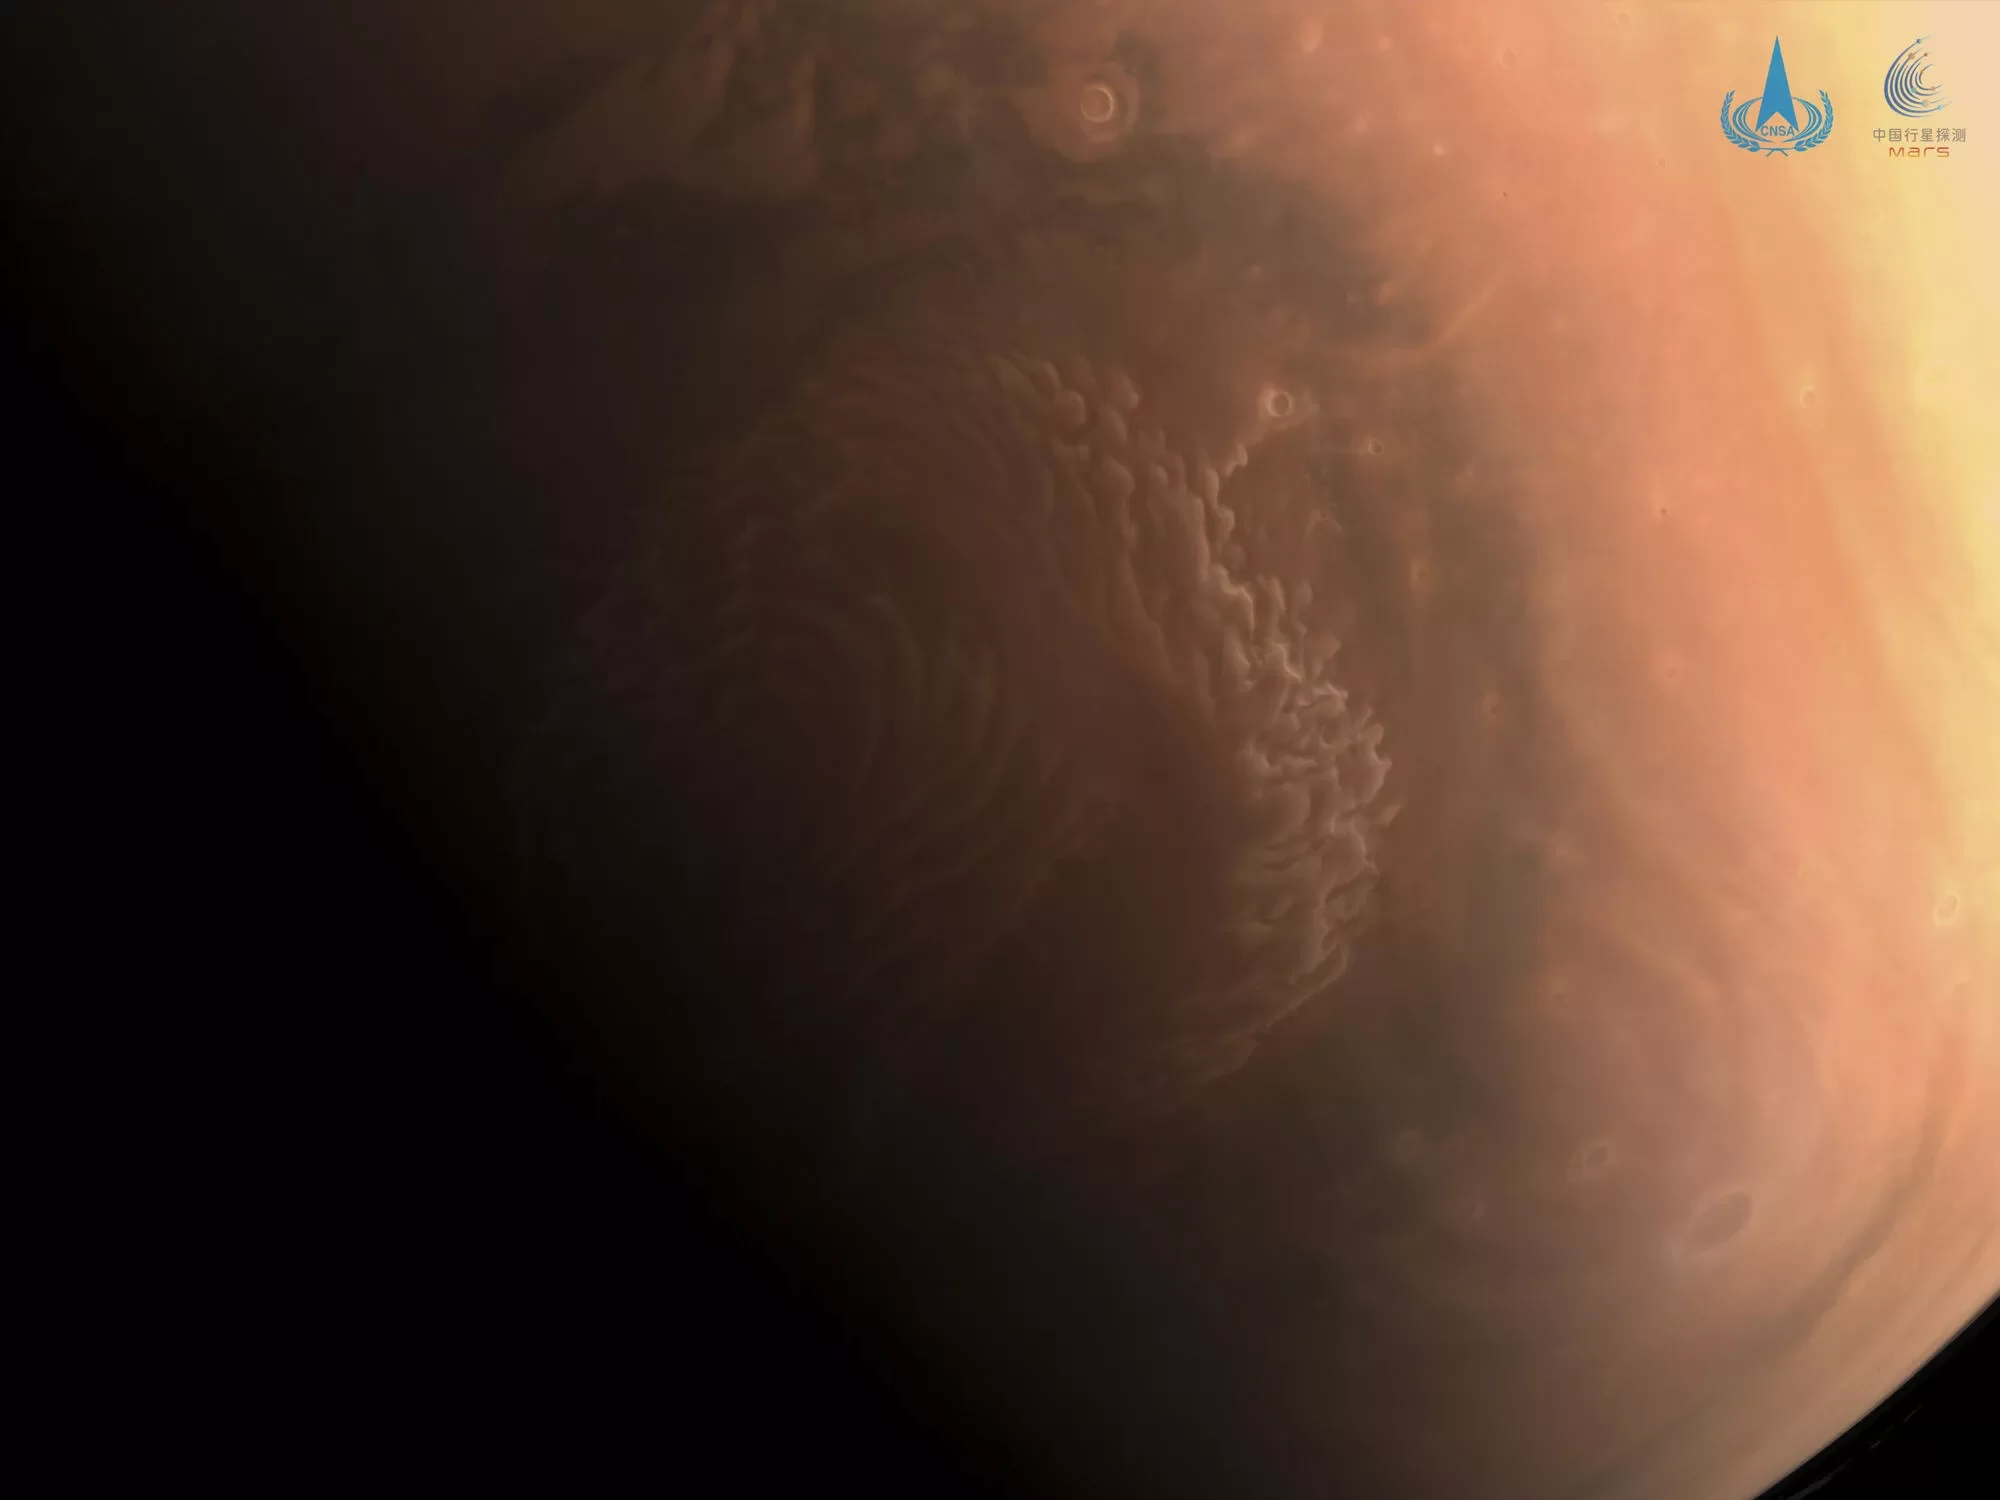 Imagem colorida de Marte enviada pela sonda Tianwen-1 da China.